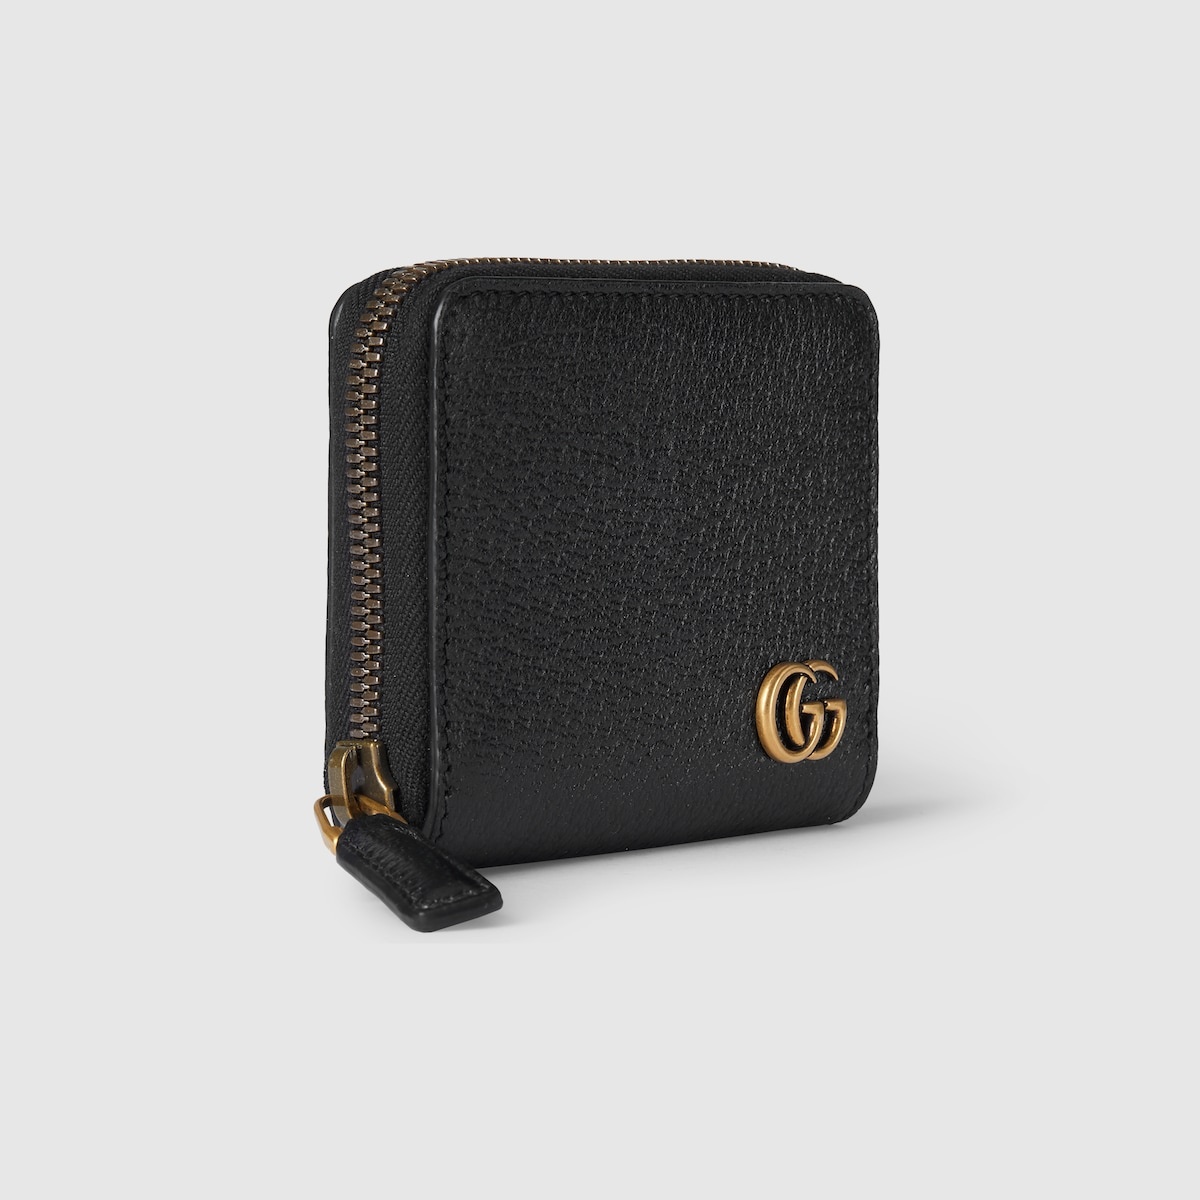 GG Marmont zip around wallet - 3